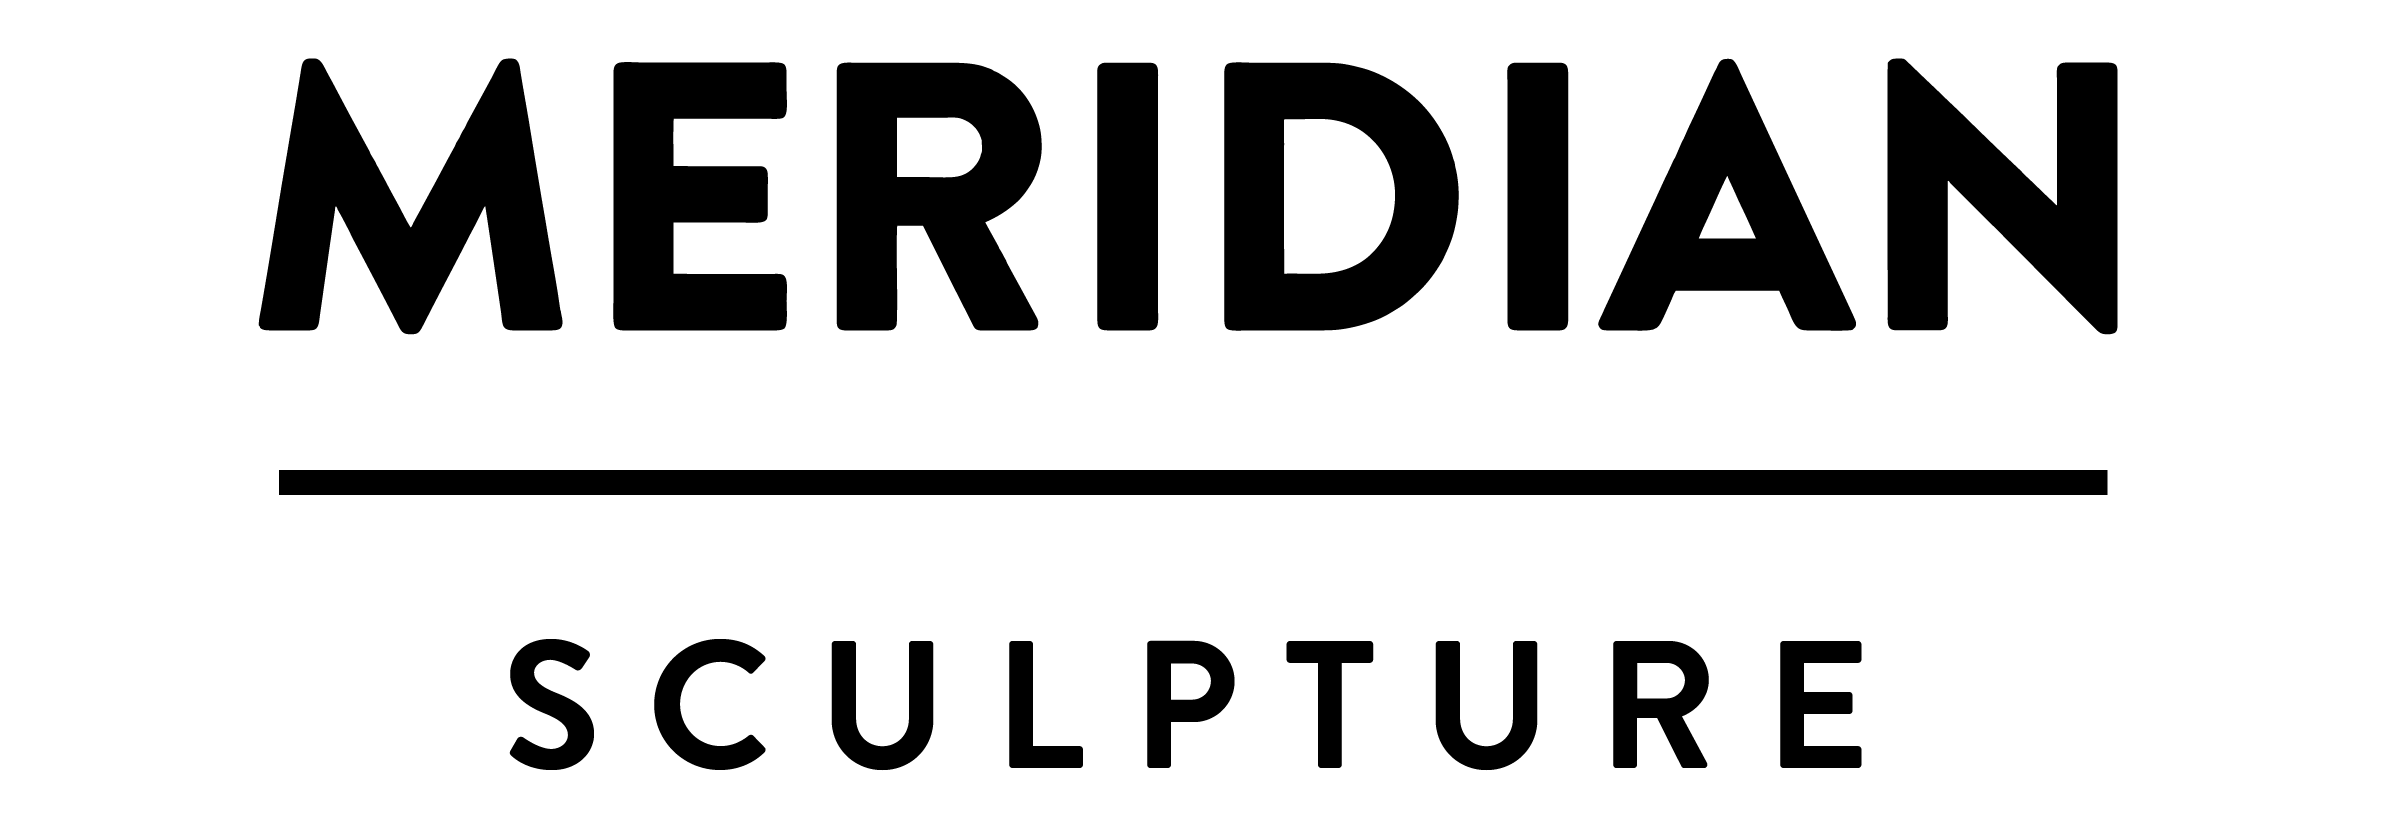 logo of Memo supporter